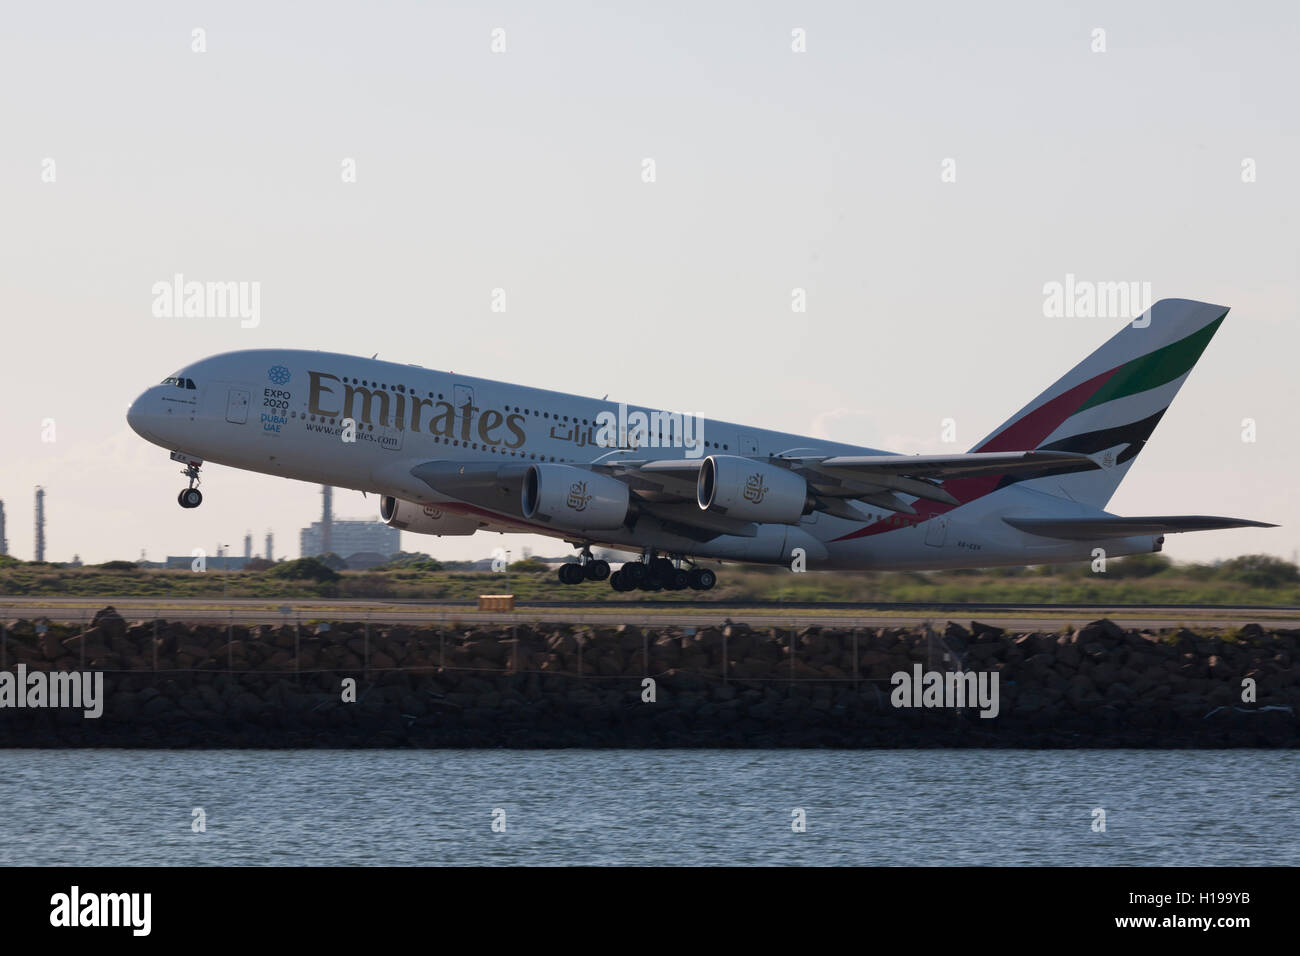 A380 Emirates Airlines au départ de l'Aéroport International de Kingsford Smith Mascot Sydney Australie Banque D'Images